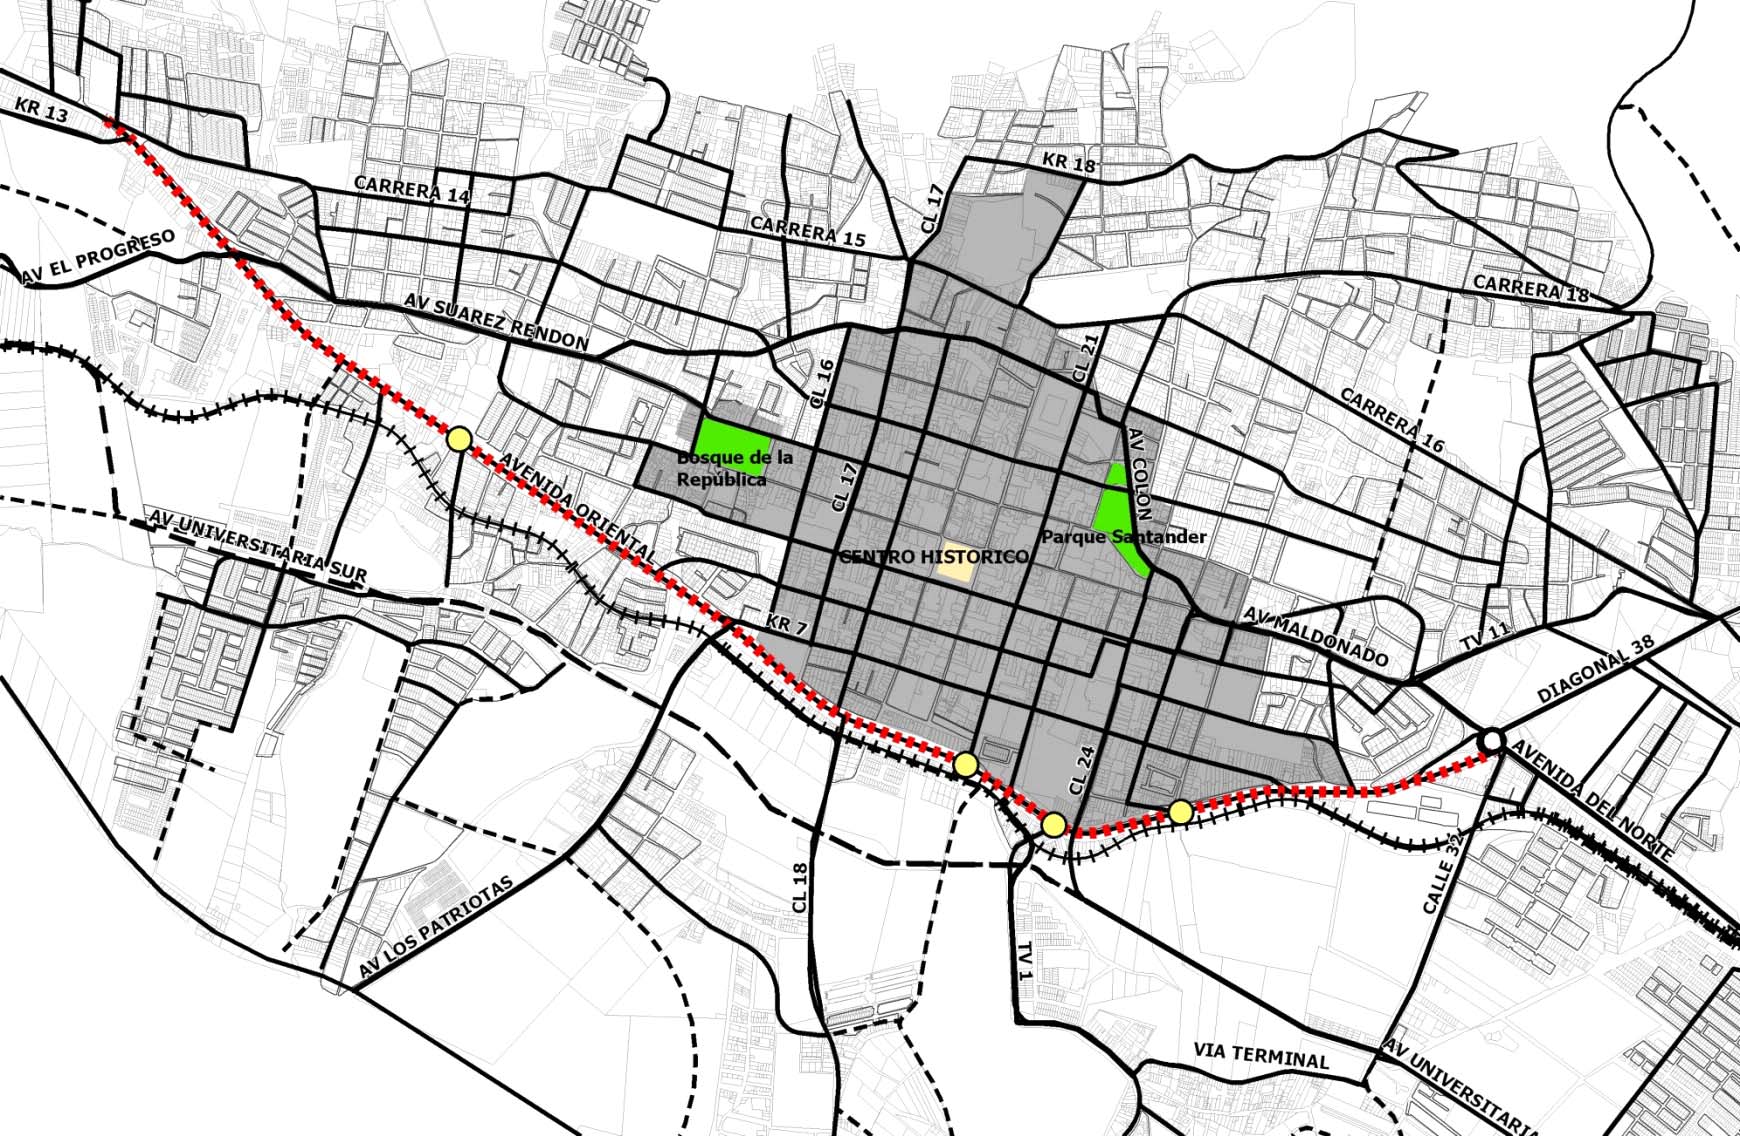 La cobertura del servicio de transporte público colectivo, alcanzada mediante una operación conjunta del anillo perimetral y el par vial propuesto, se muestra en la Ilustración 11, en donde es